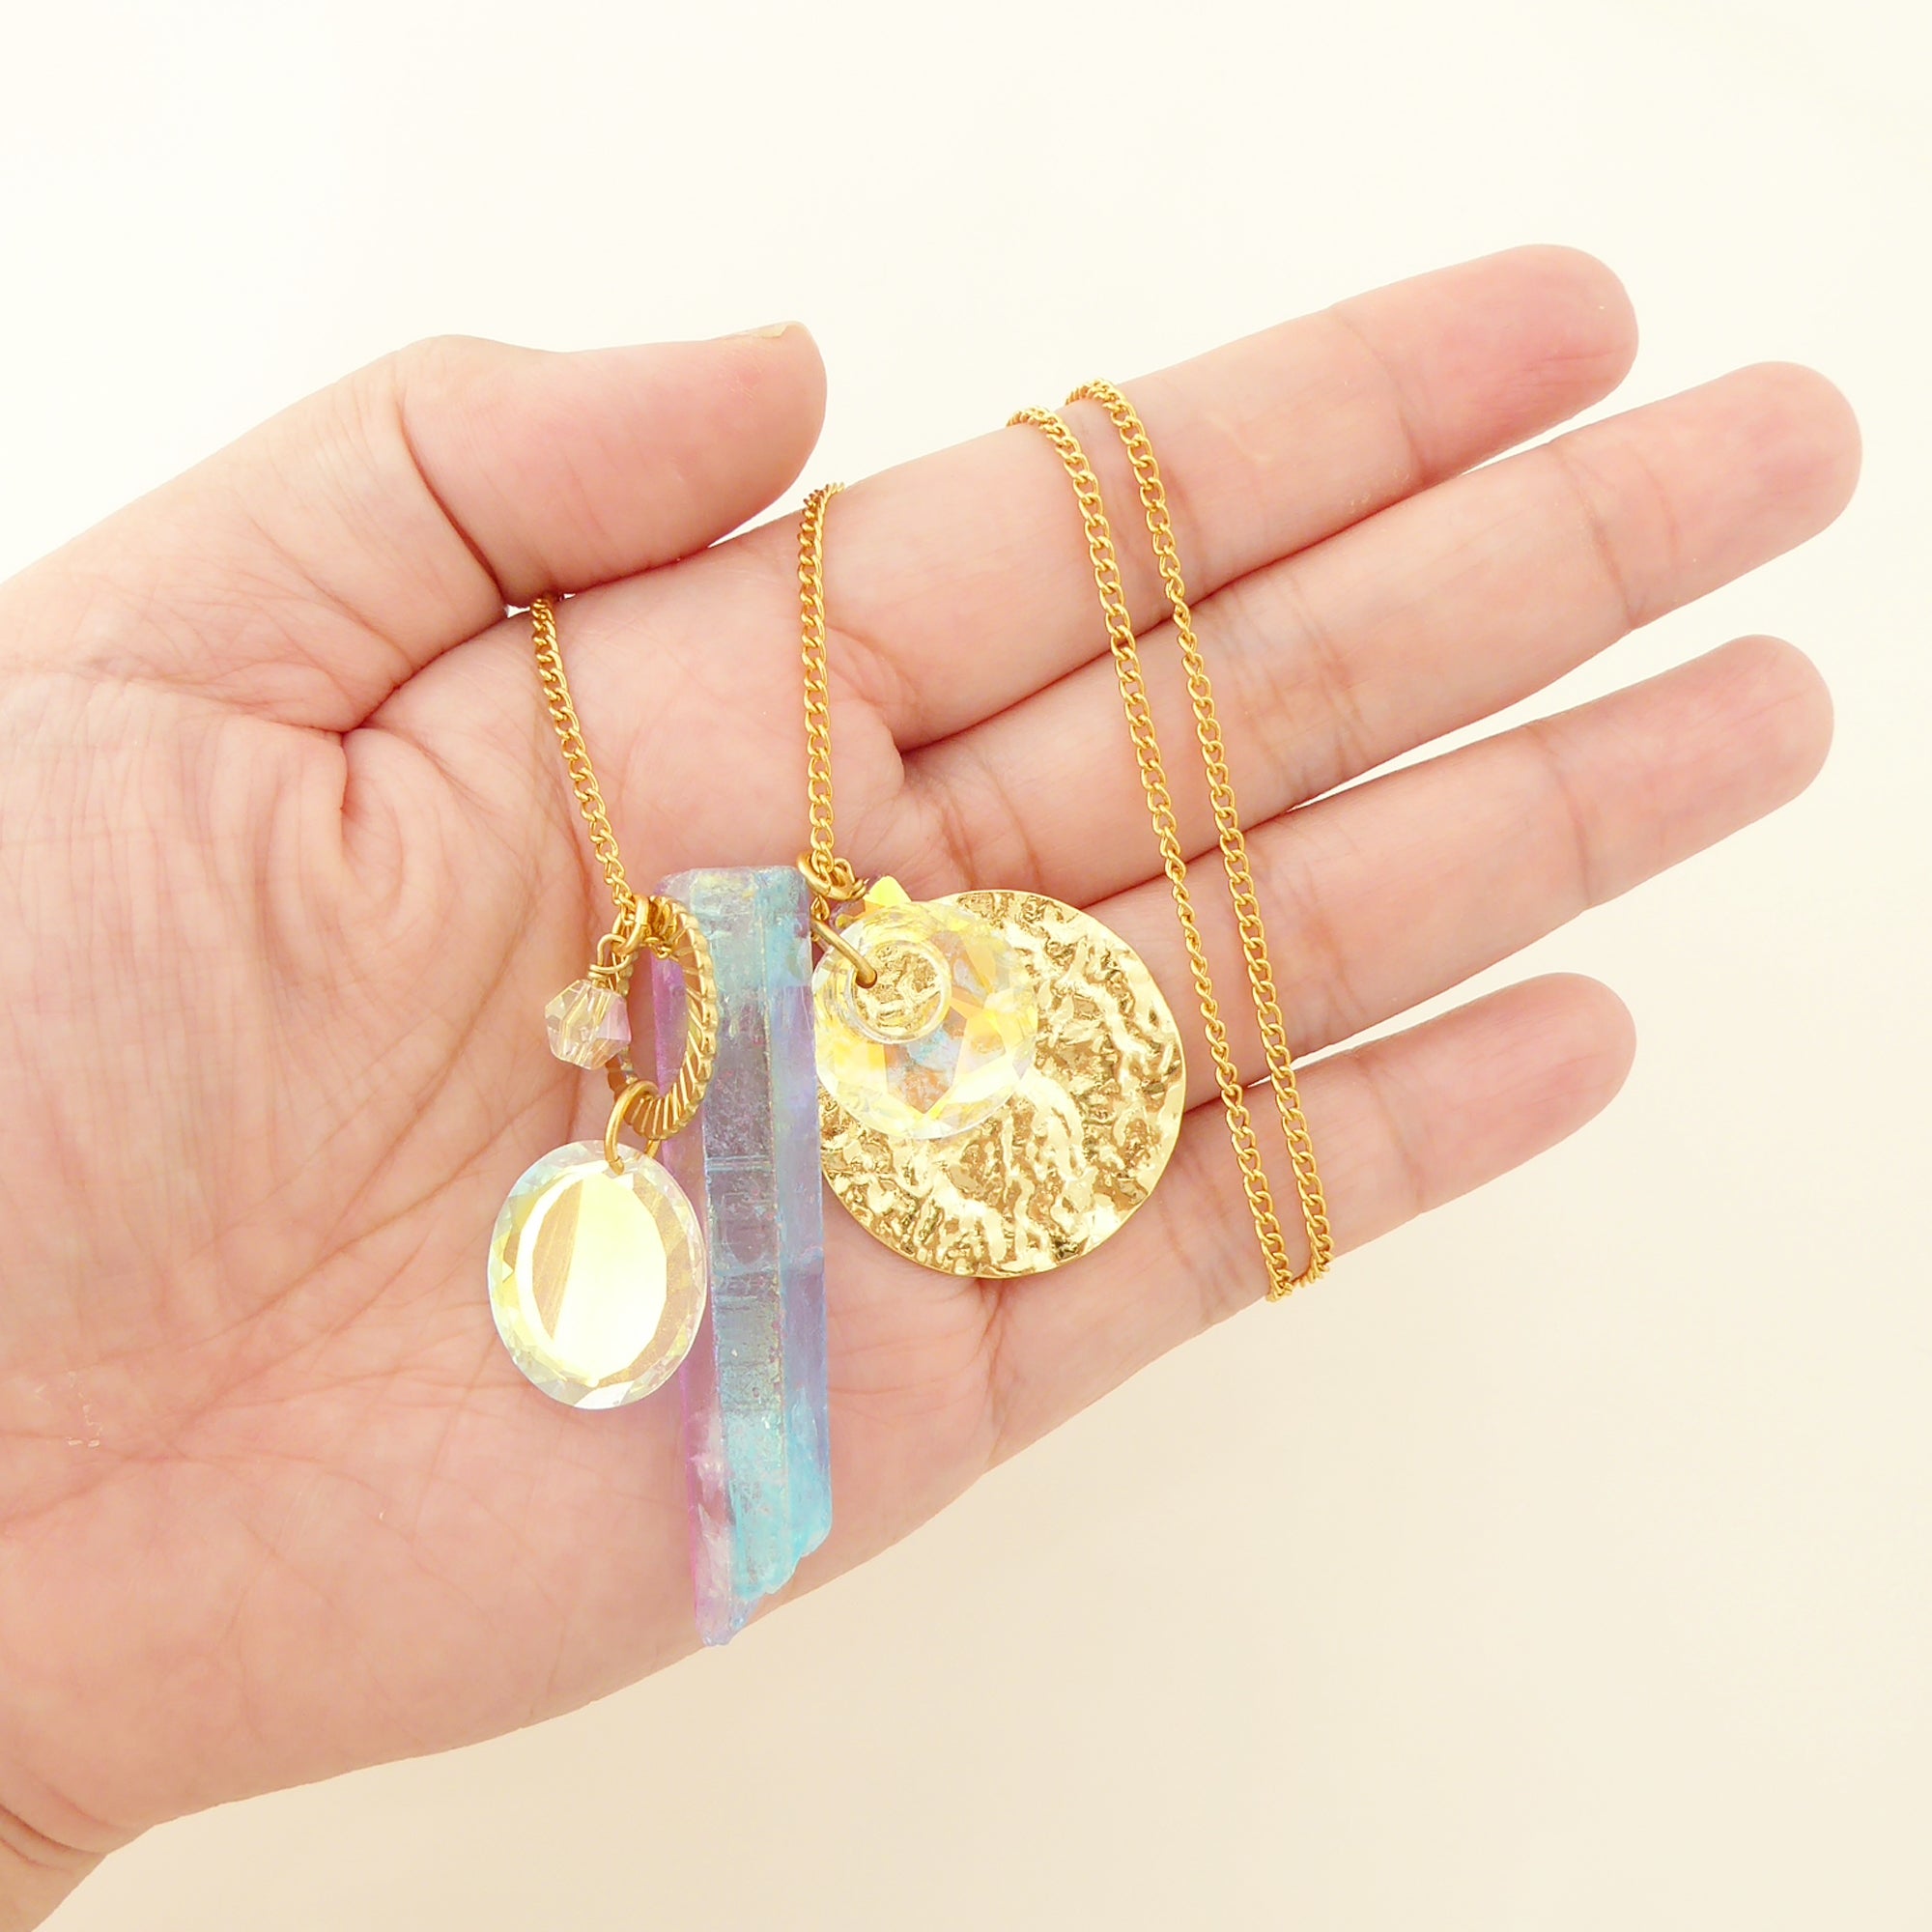 Angel aura quartz necklace by Jenny Dayco 6